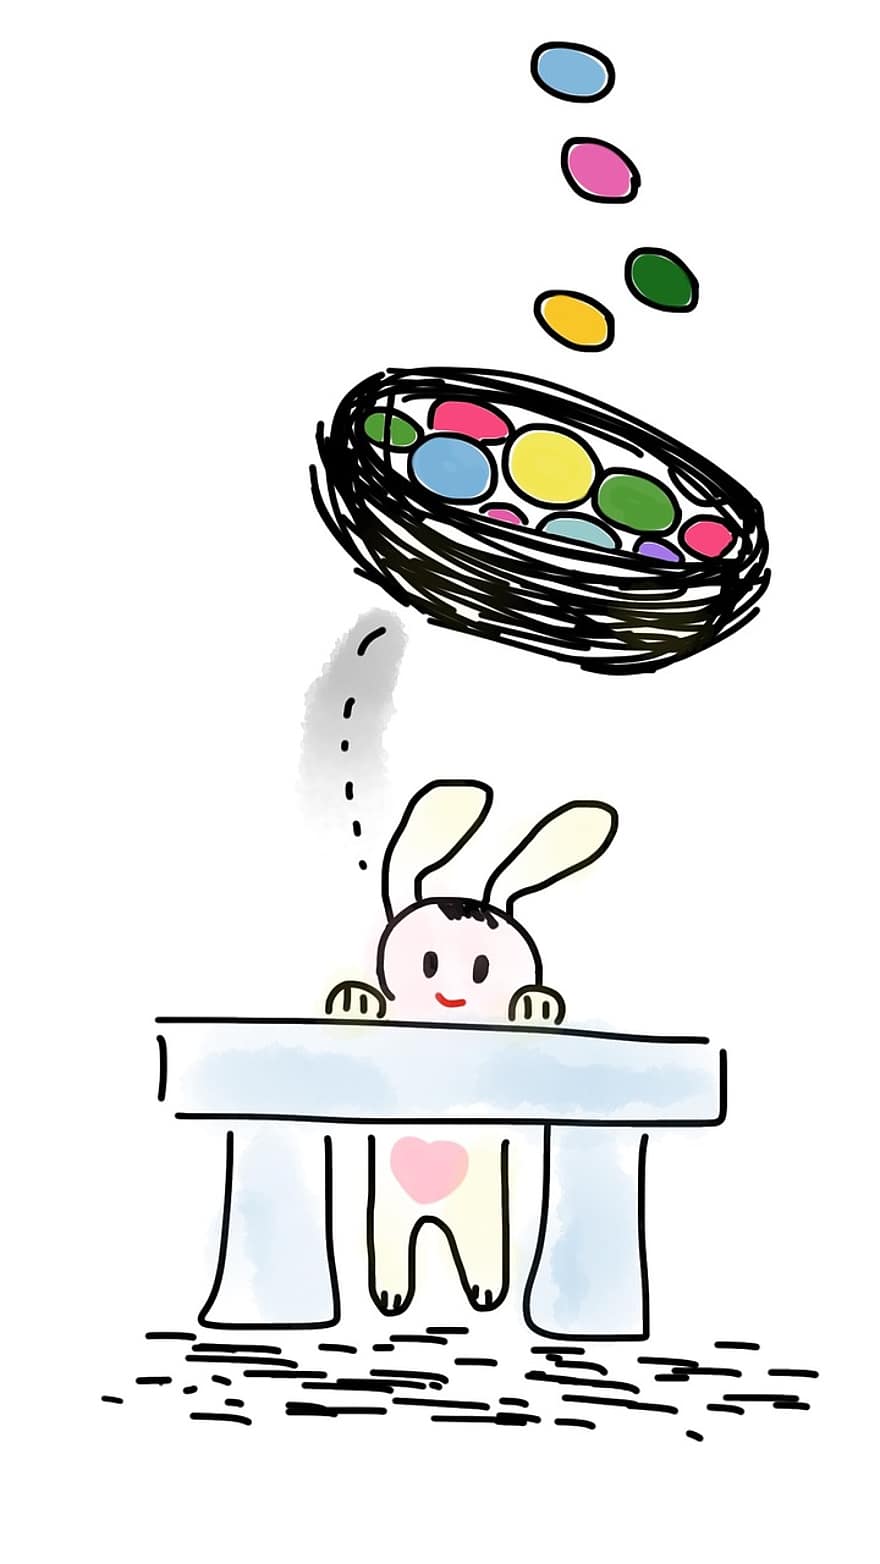 Paskah, kelinci, telur, keranjang, bangku, imut, kelinci Paskah, liburan, hewan, manis sekali, warna